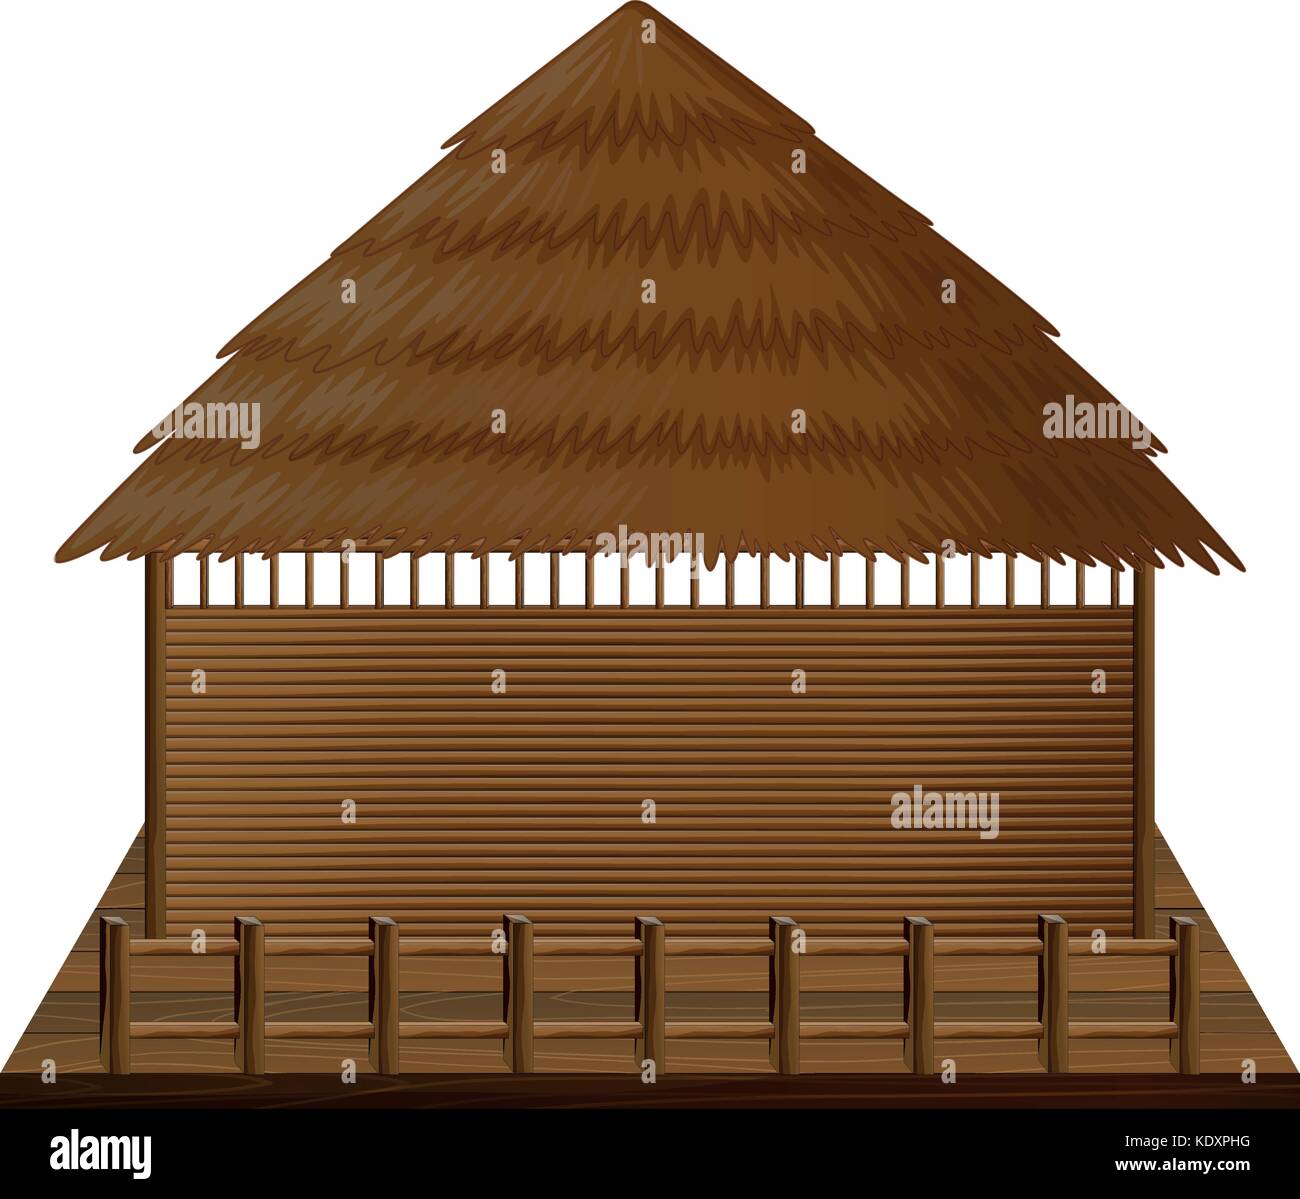 Wooden hut on woodn raft illustration Stock Vector